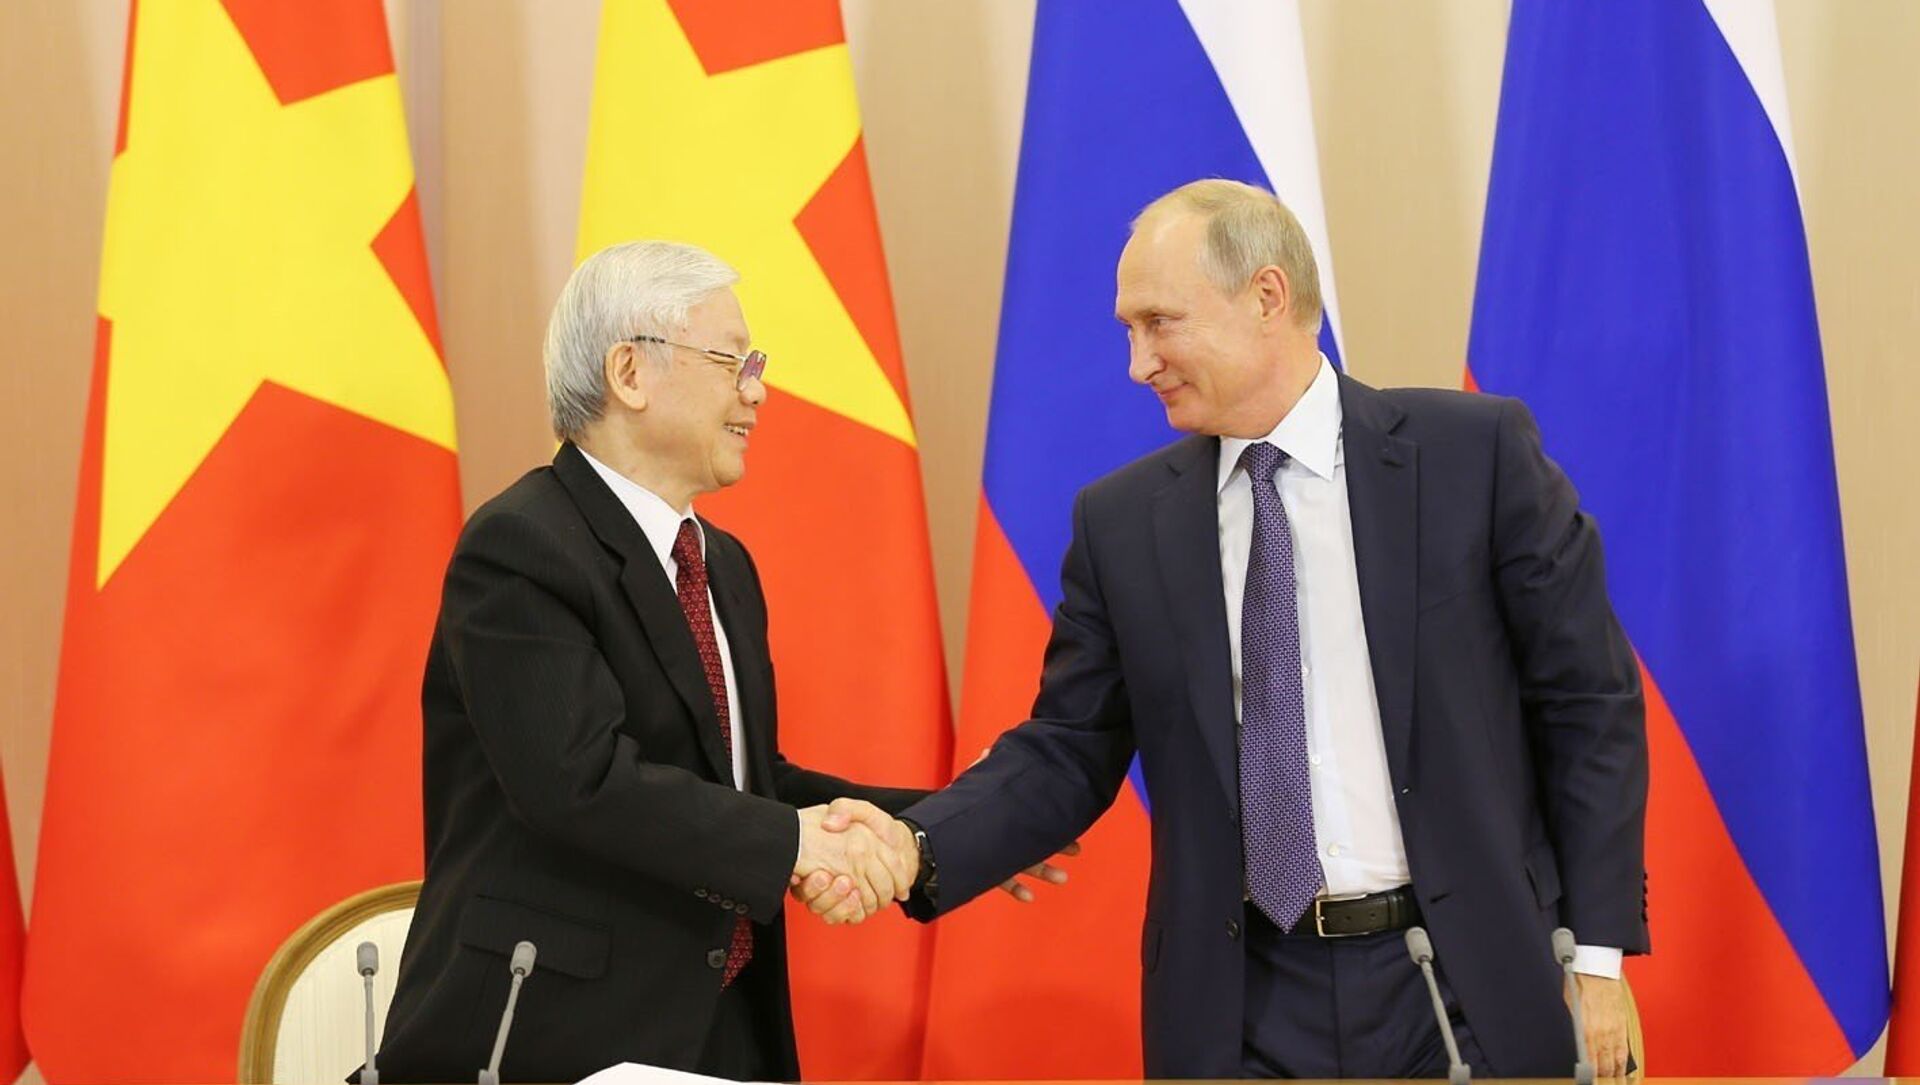 Tổng Bí thư Nguyễn Phú Trọng và Tổng thống Vladimir Putin chứng kiến Lễ ký kết các văn kiện hợp tác giữa Việt Nam và Liên bang Nga - Sputnik Việt Nam, 1920, 05.02.2021